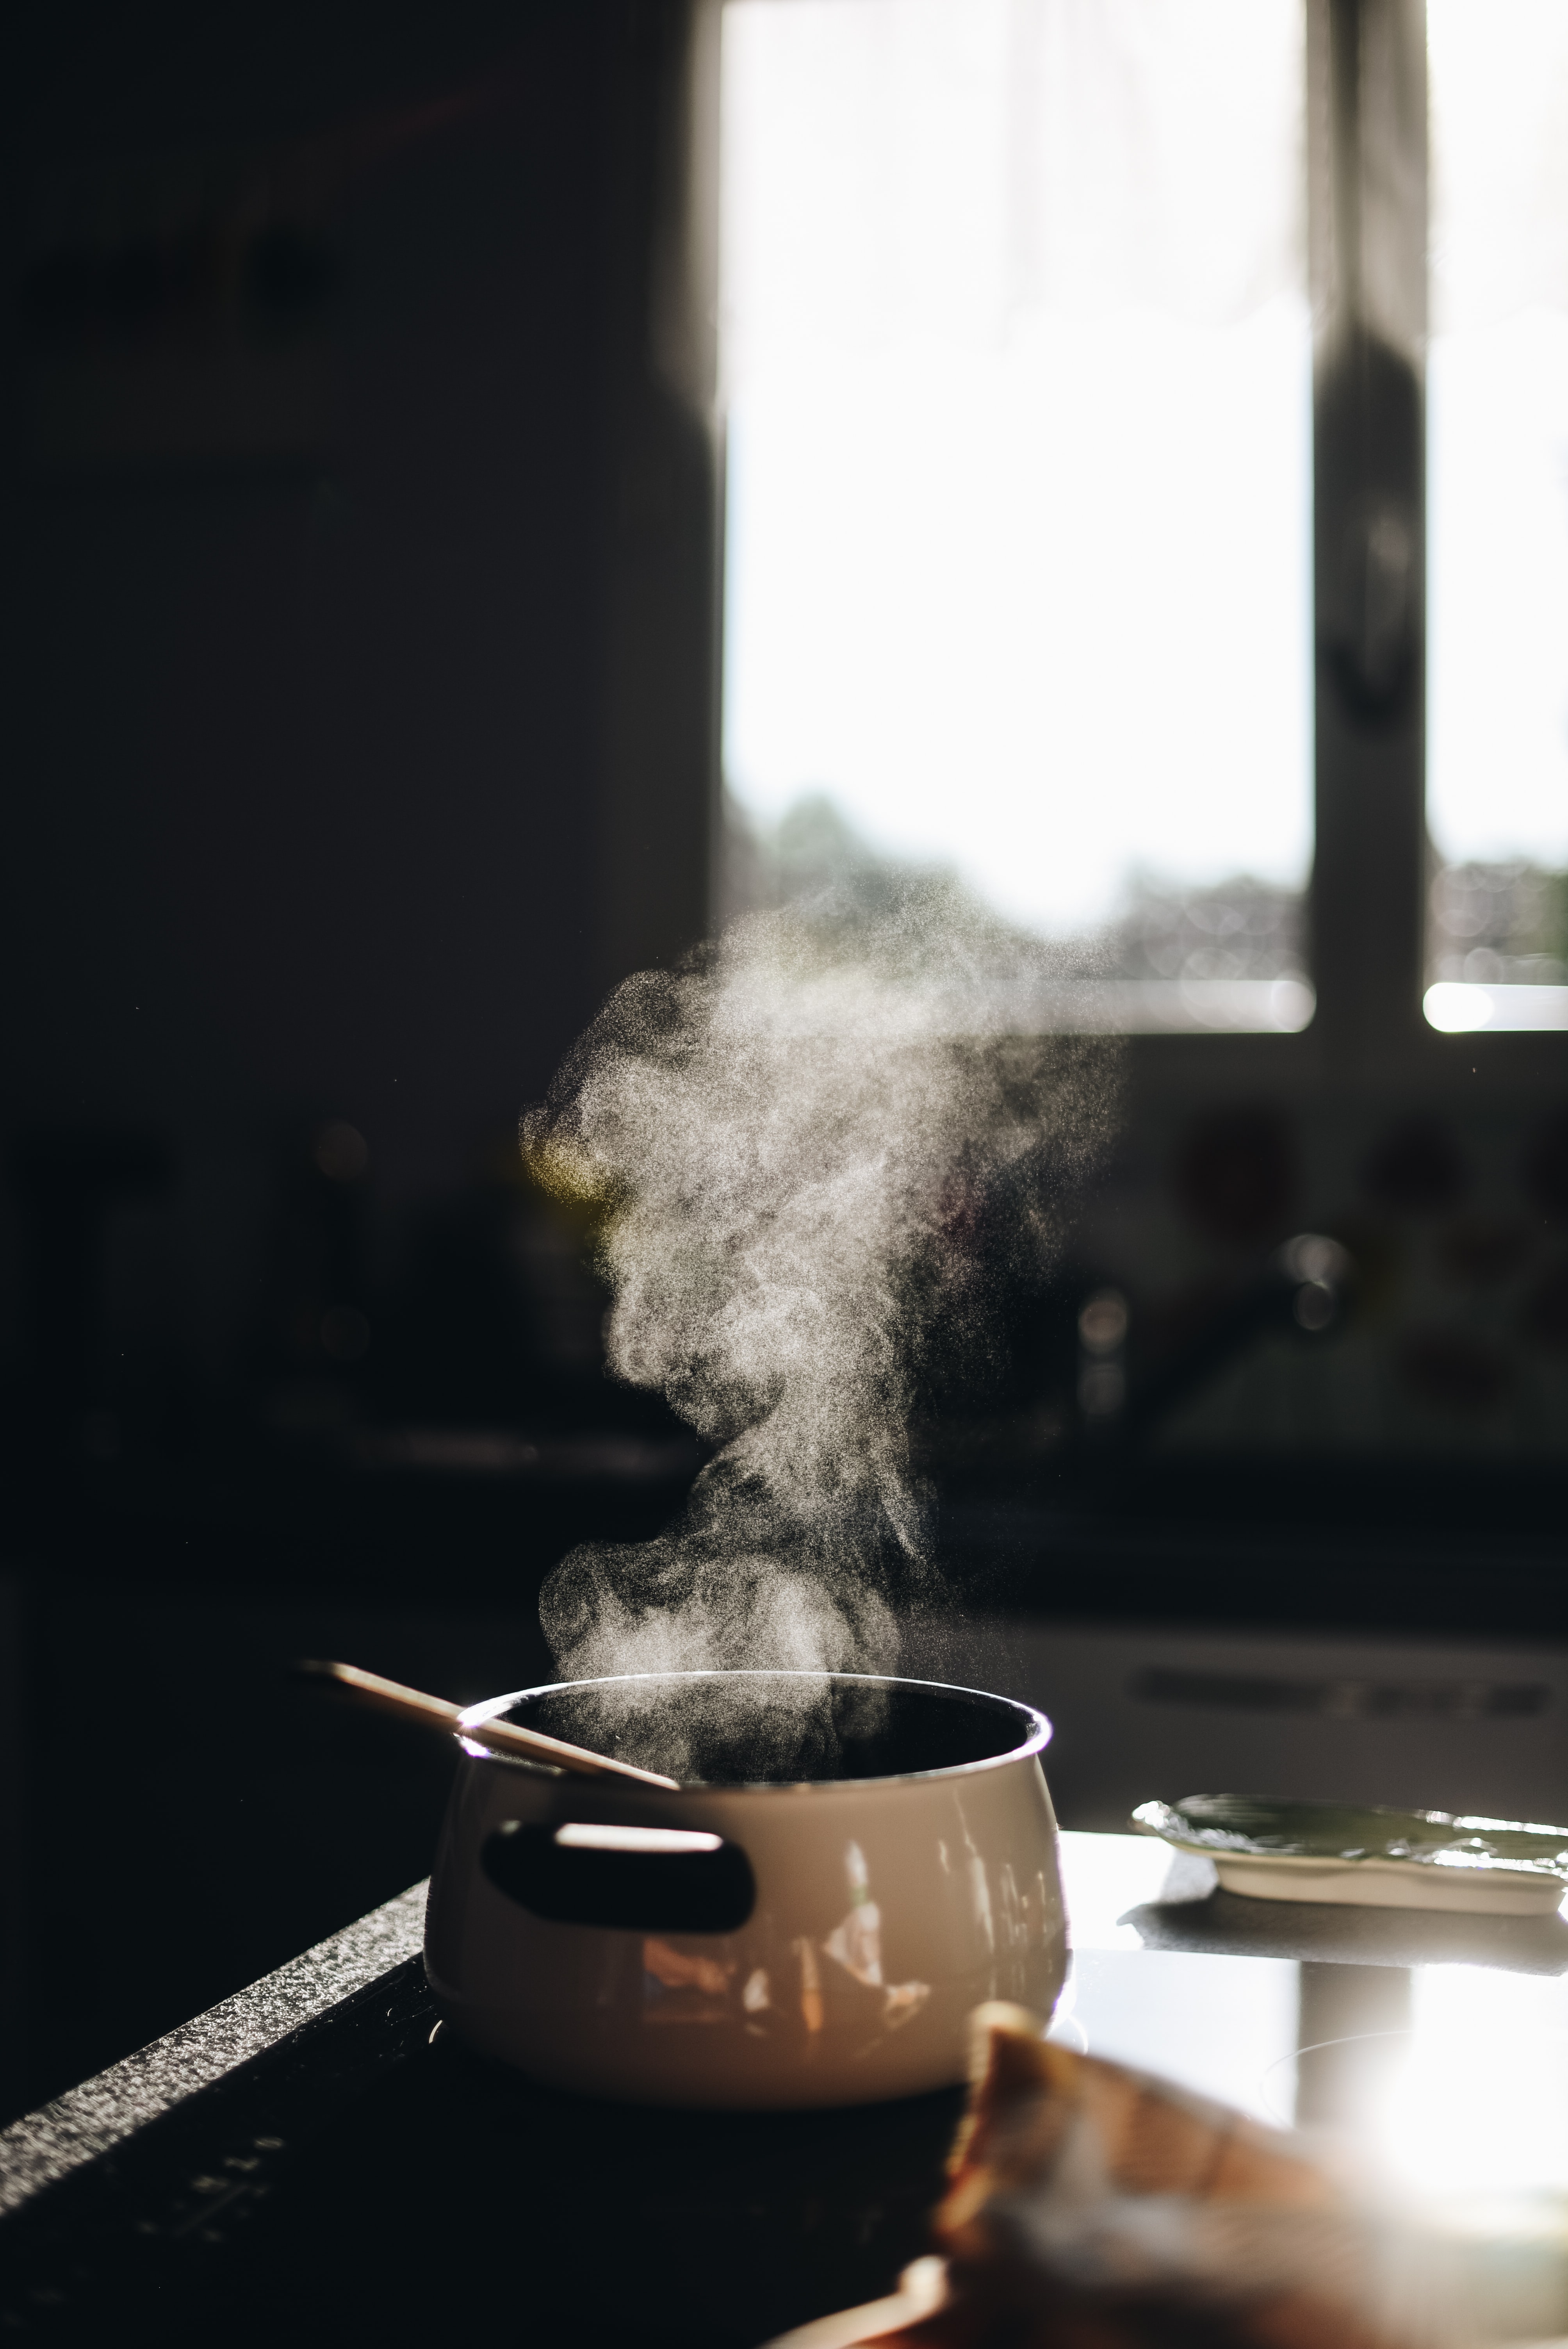 A steaming saucepan